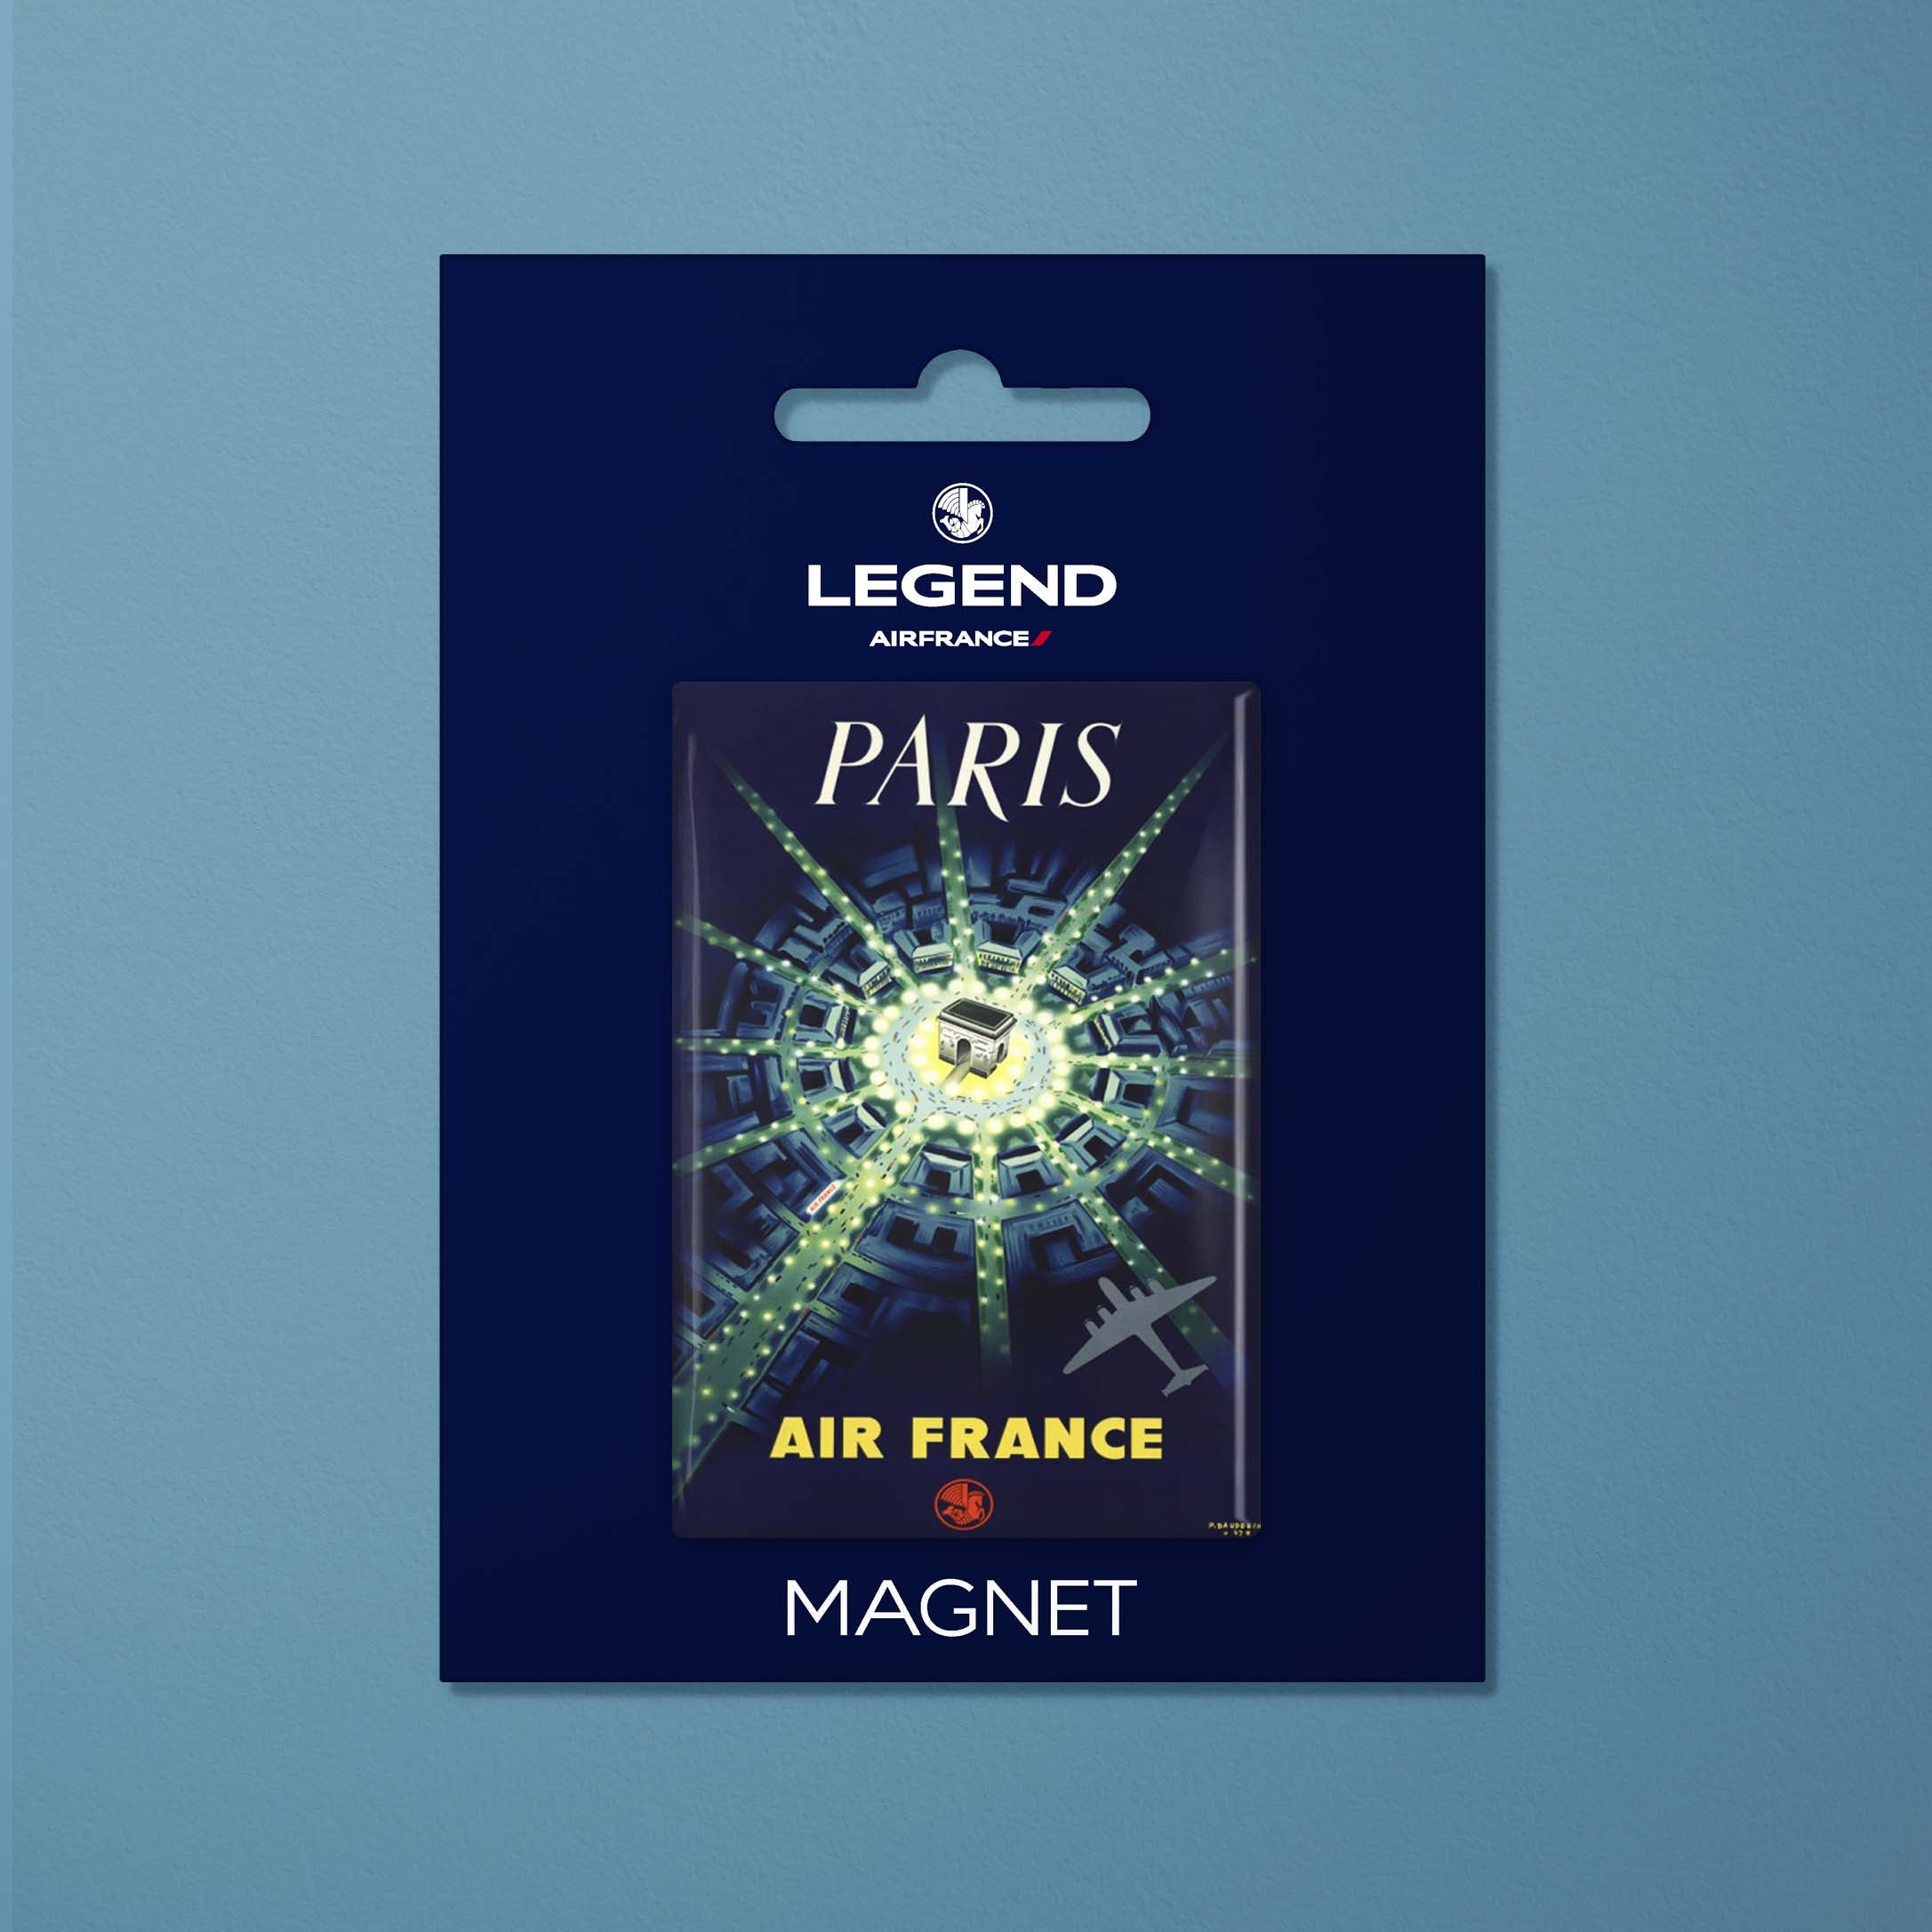 Magnet Air France Legend Paris, Arc de Triomphe